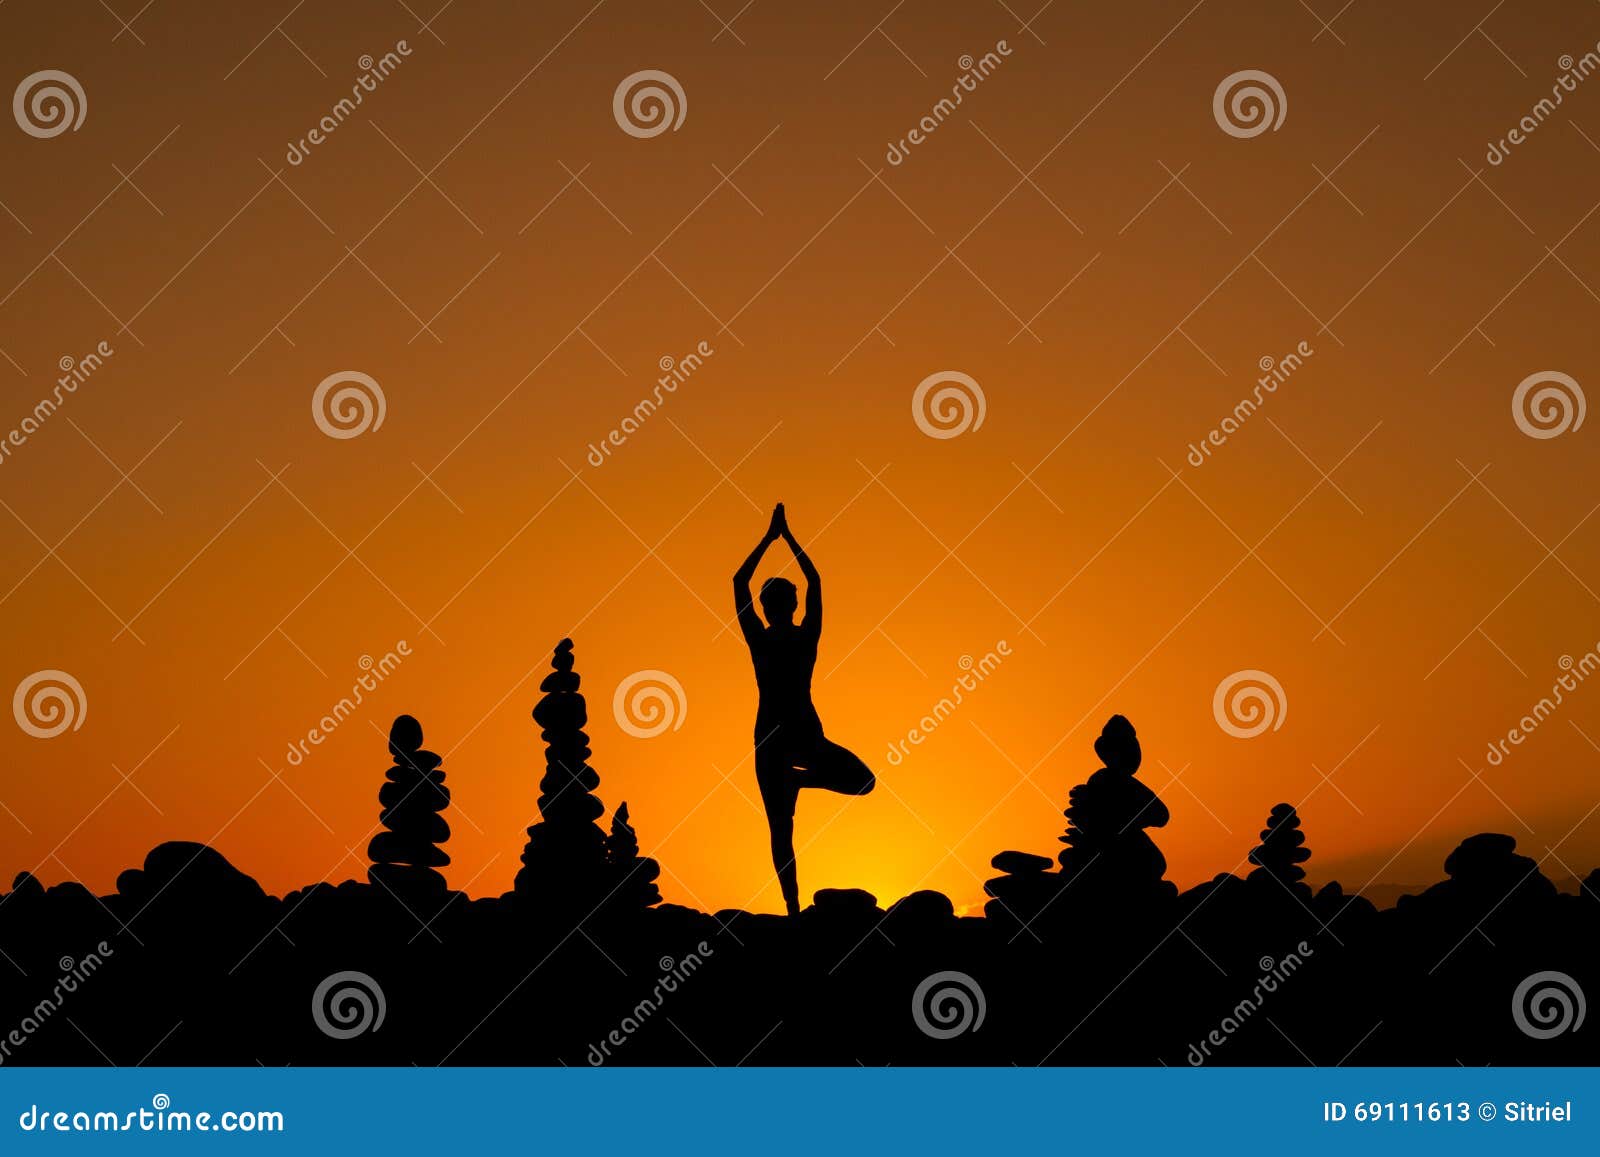 oriental yoga session on tenerife